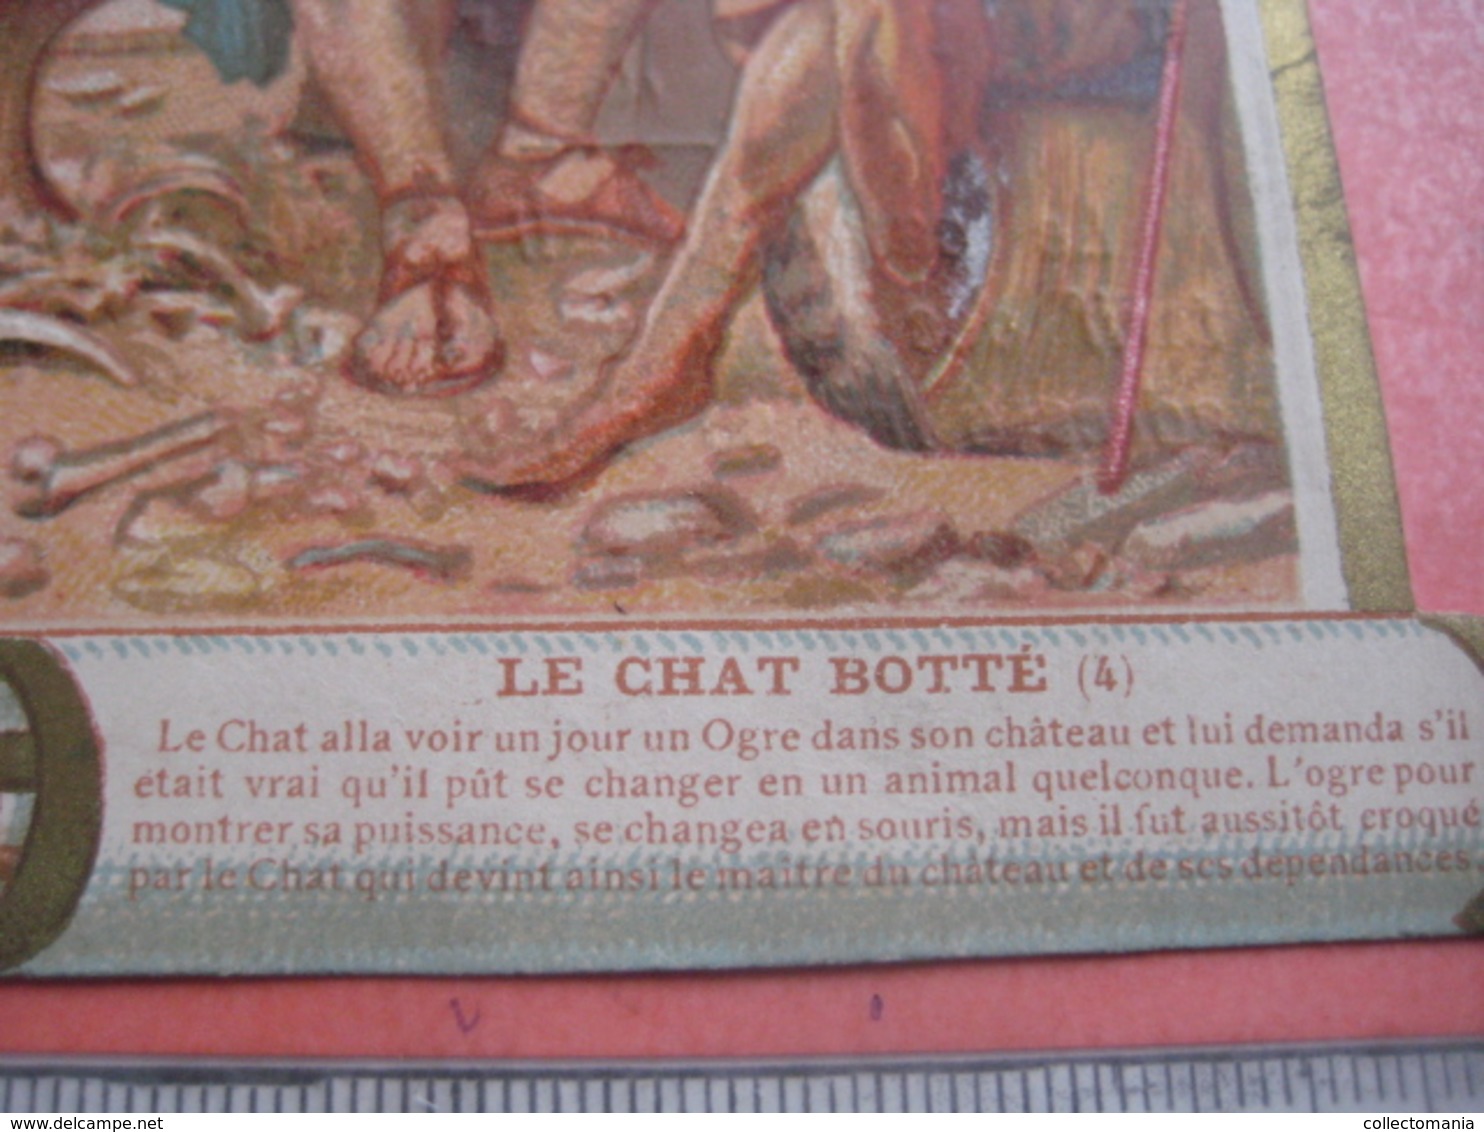 5 chromo cards - RECLAME POULAIN - De gelaarsde kat - le chat botté - Pussy in boots, cat - circa 1890 - PERAULT